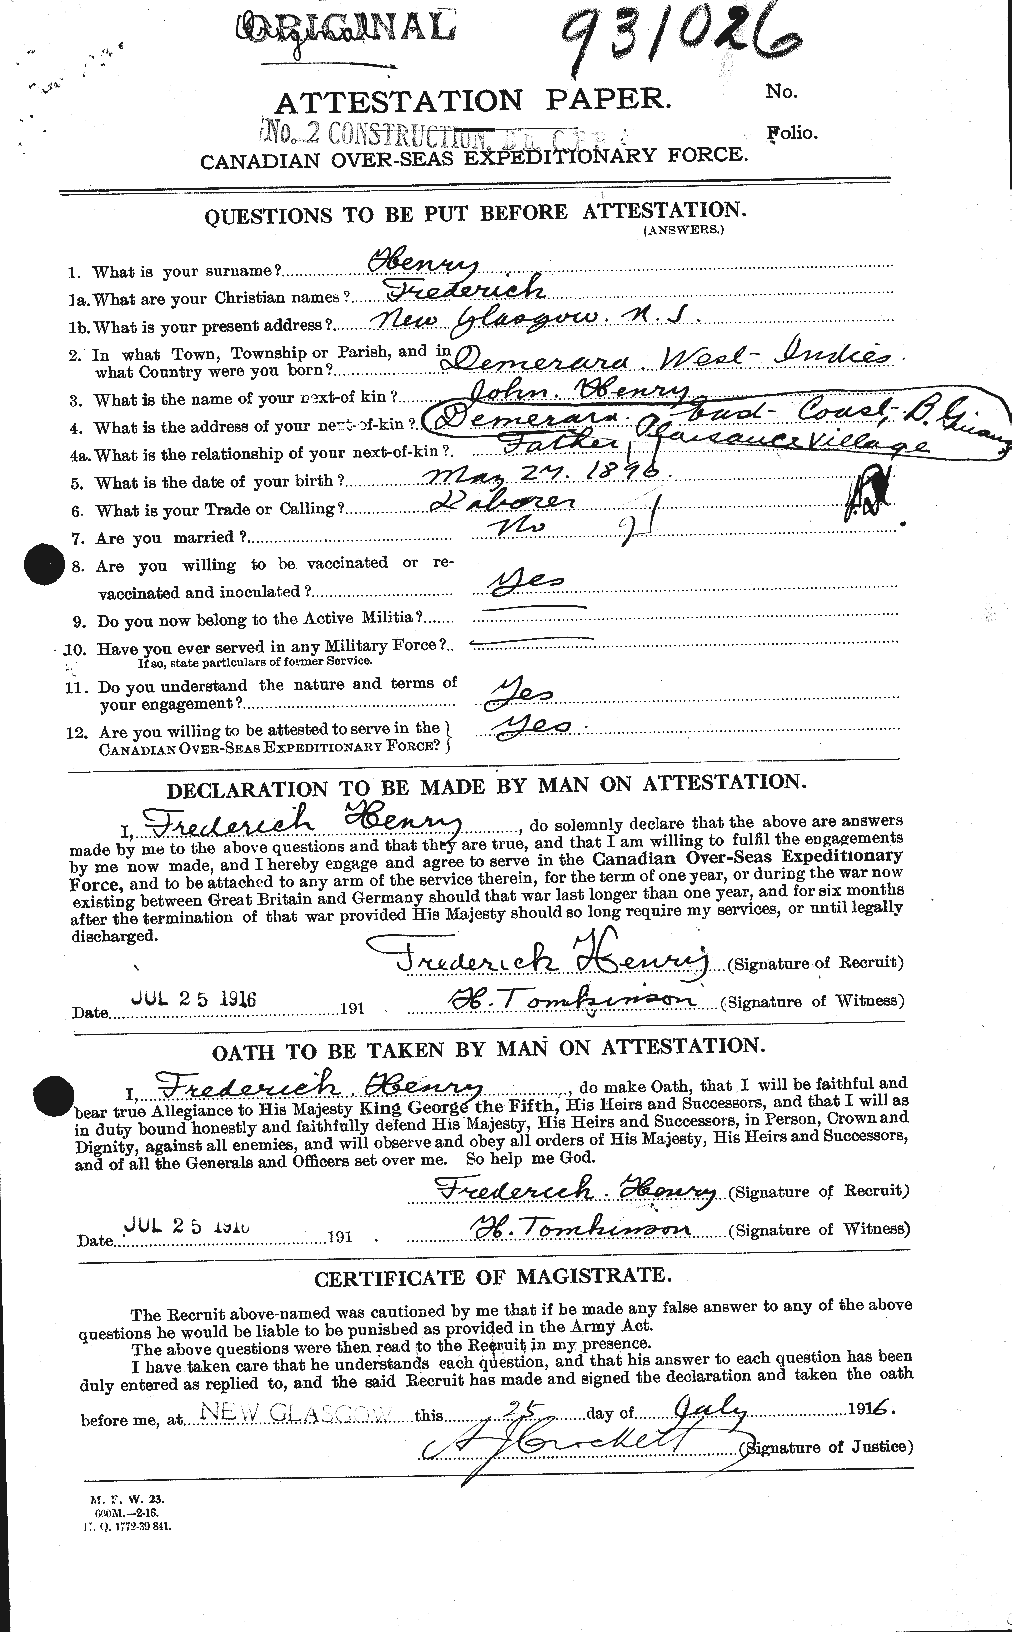 Dossiers du Personnel de la Première Guerre mondiale - CEC 392858a